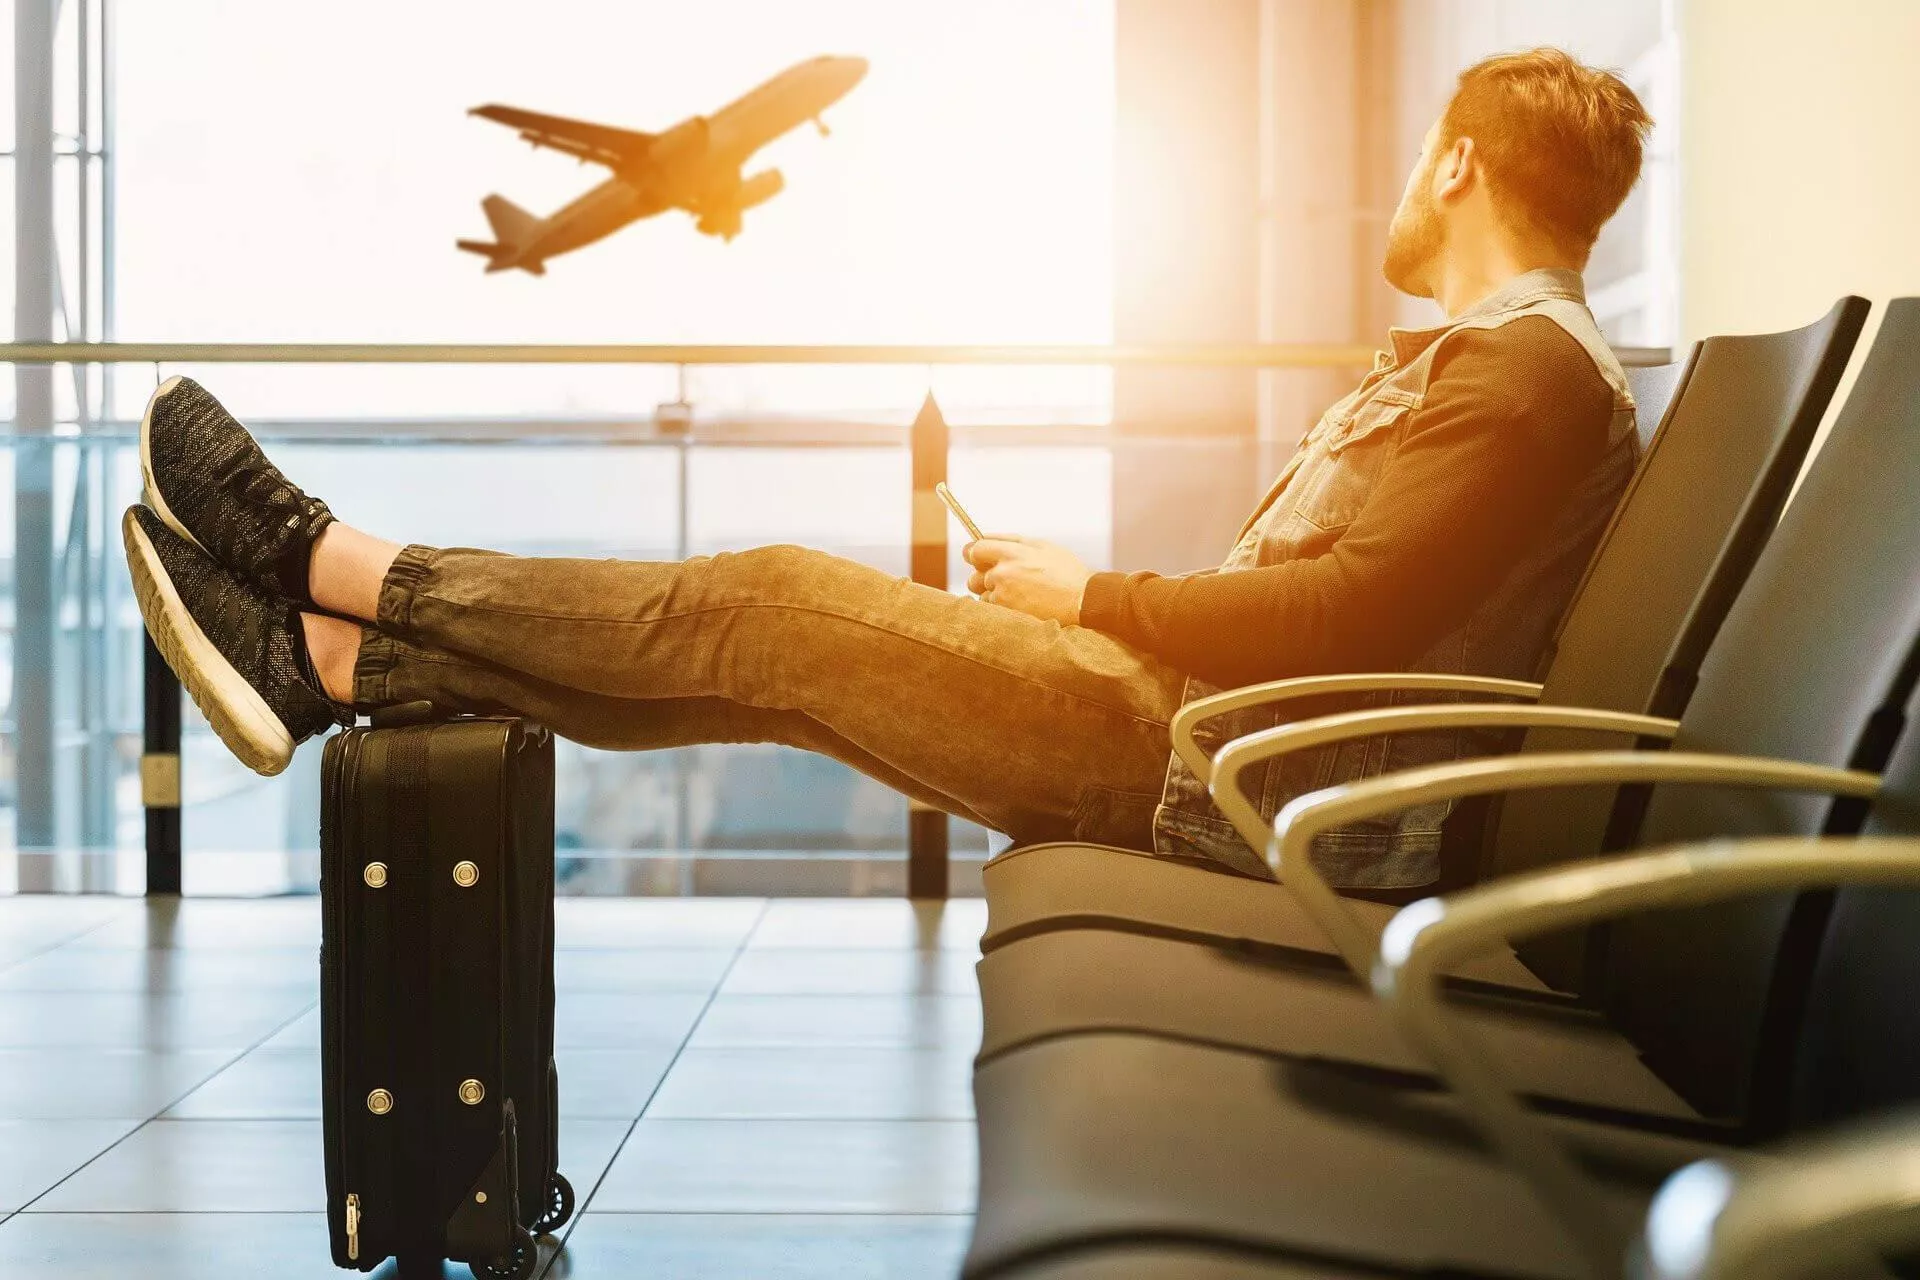 Reizen met handbagage in het vliegtuig? Check deze tips!